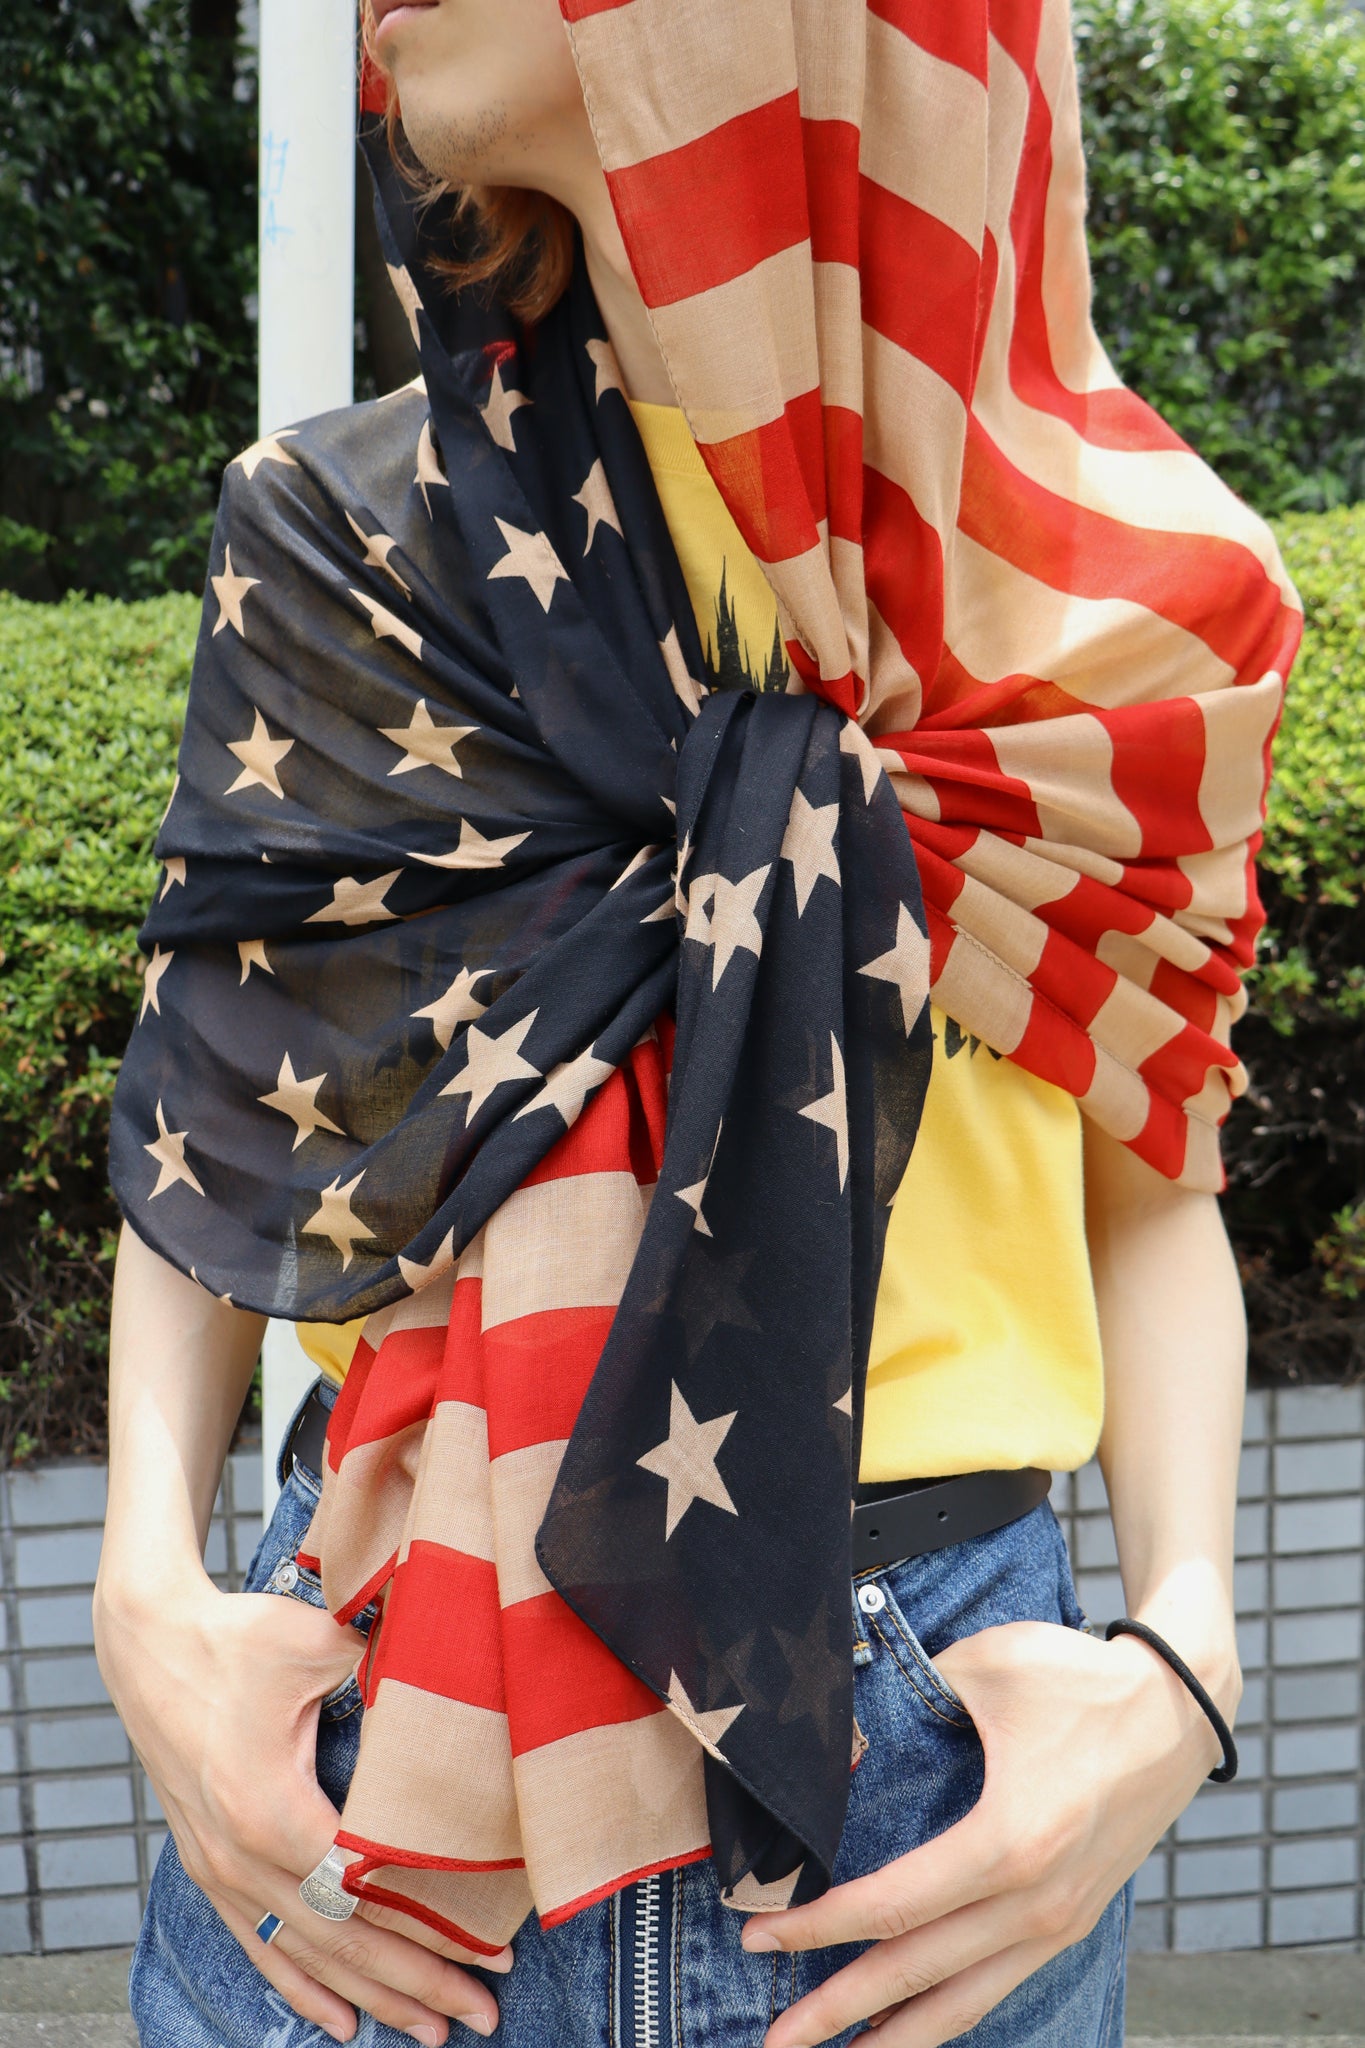 Styling image using masu 23aw flag scarf